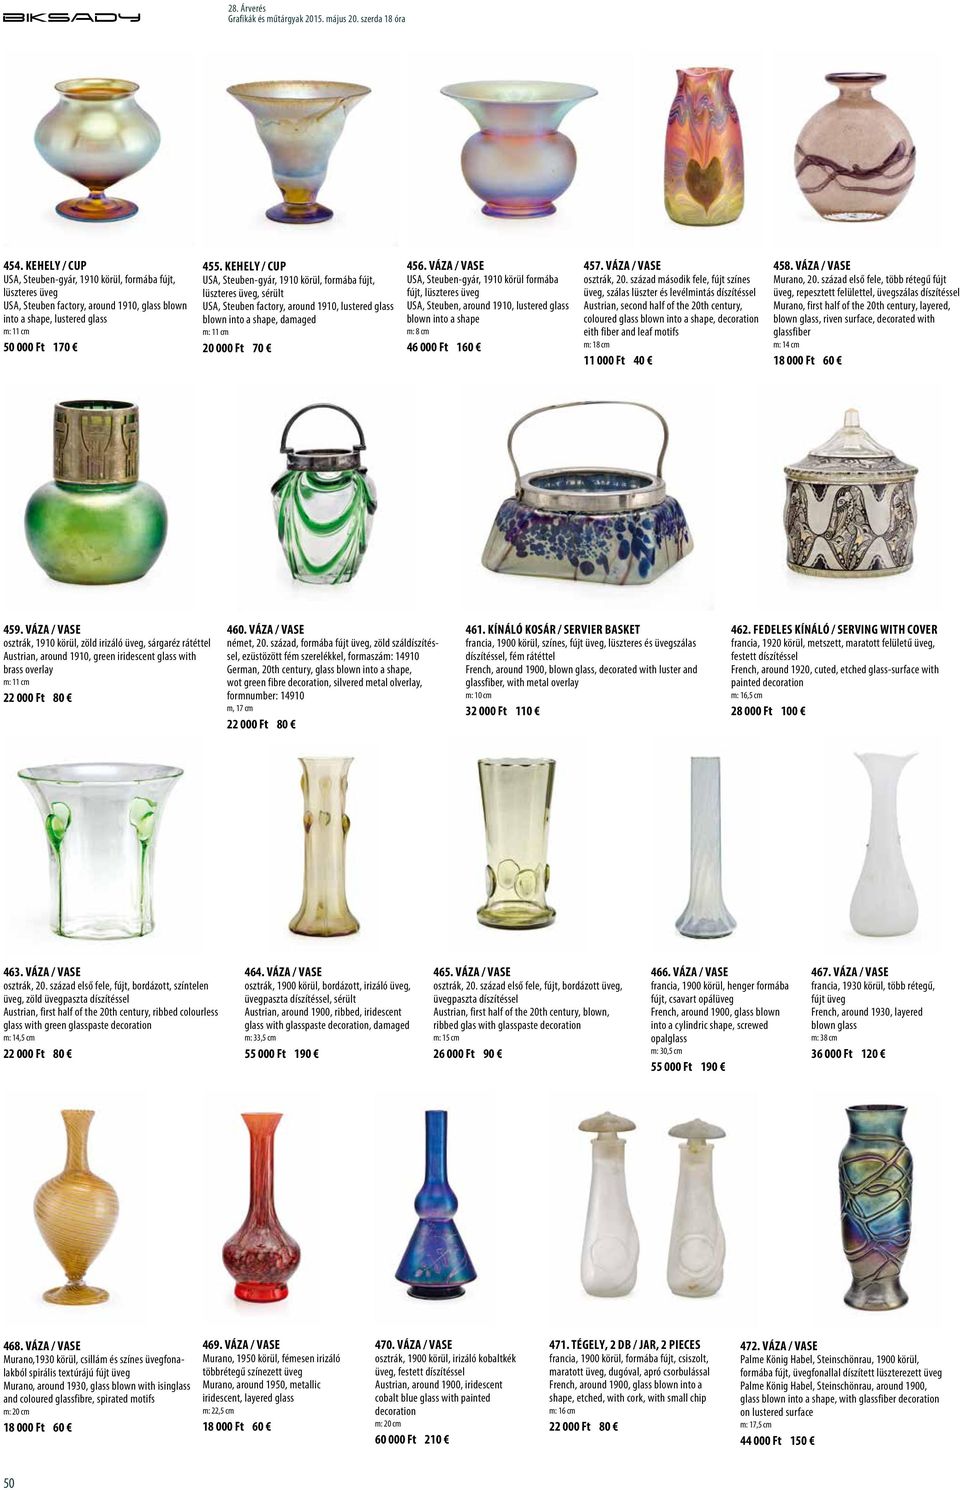 Váza / Vase USA, Steuben-gyár, 1910 körül formába fújt, lüszteres üveg USA, Steuben, around 1910, lustered glass blown into a shape m: 8 cm 46 000 Ft 160 457. Váza / Vase osztrák, 20.